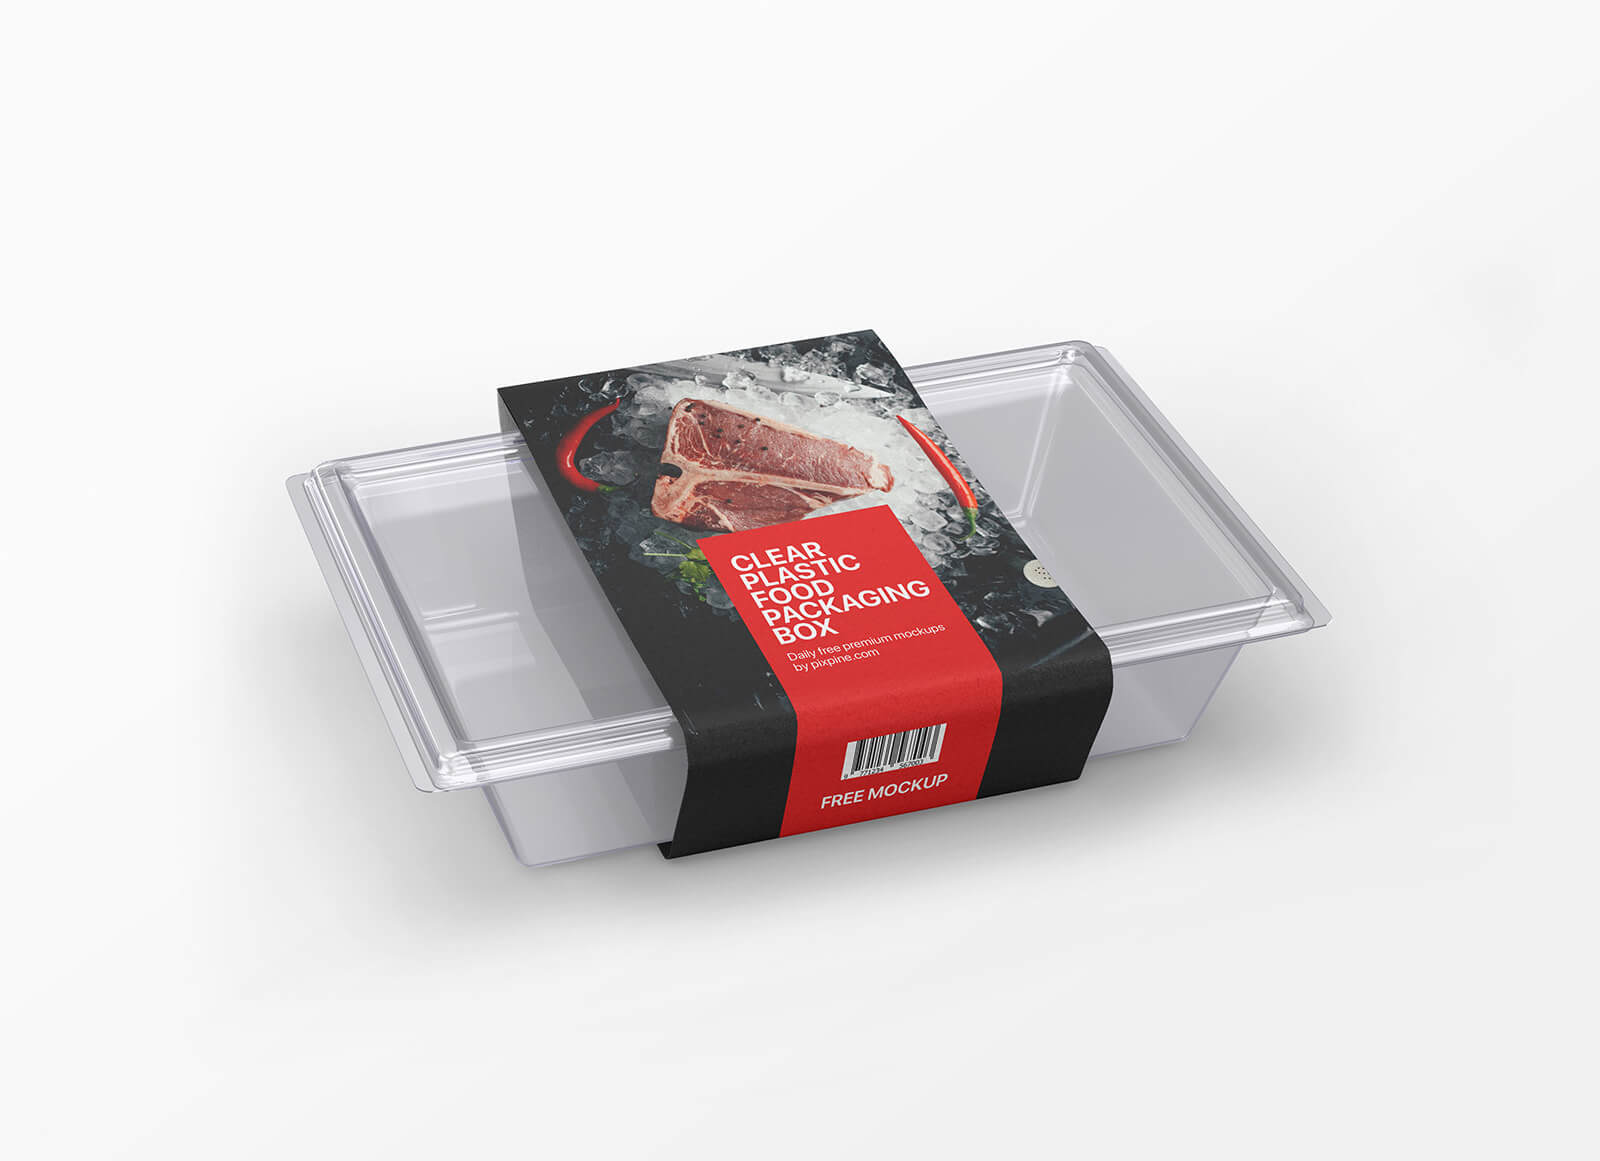 Maqueta de recipientes de alimentos de plástico transparente